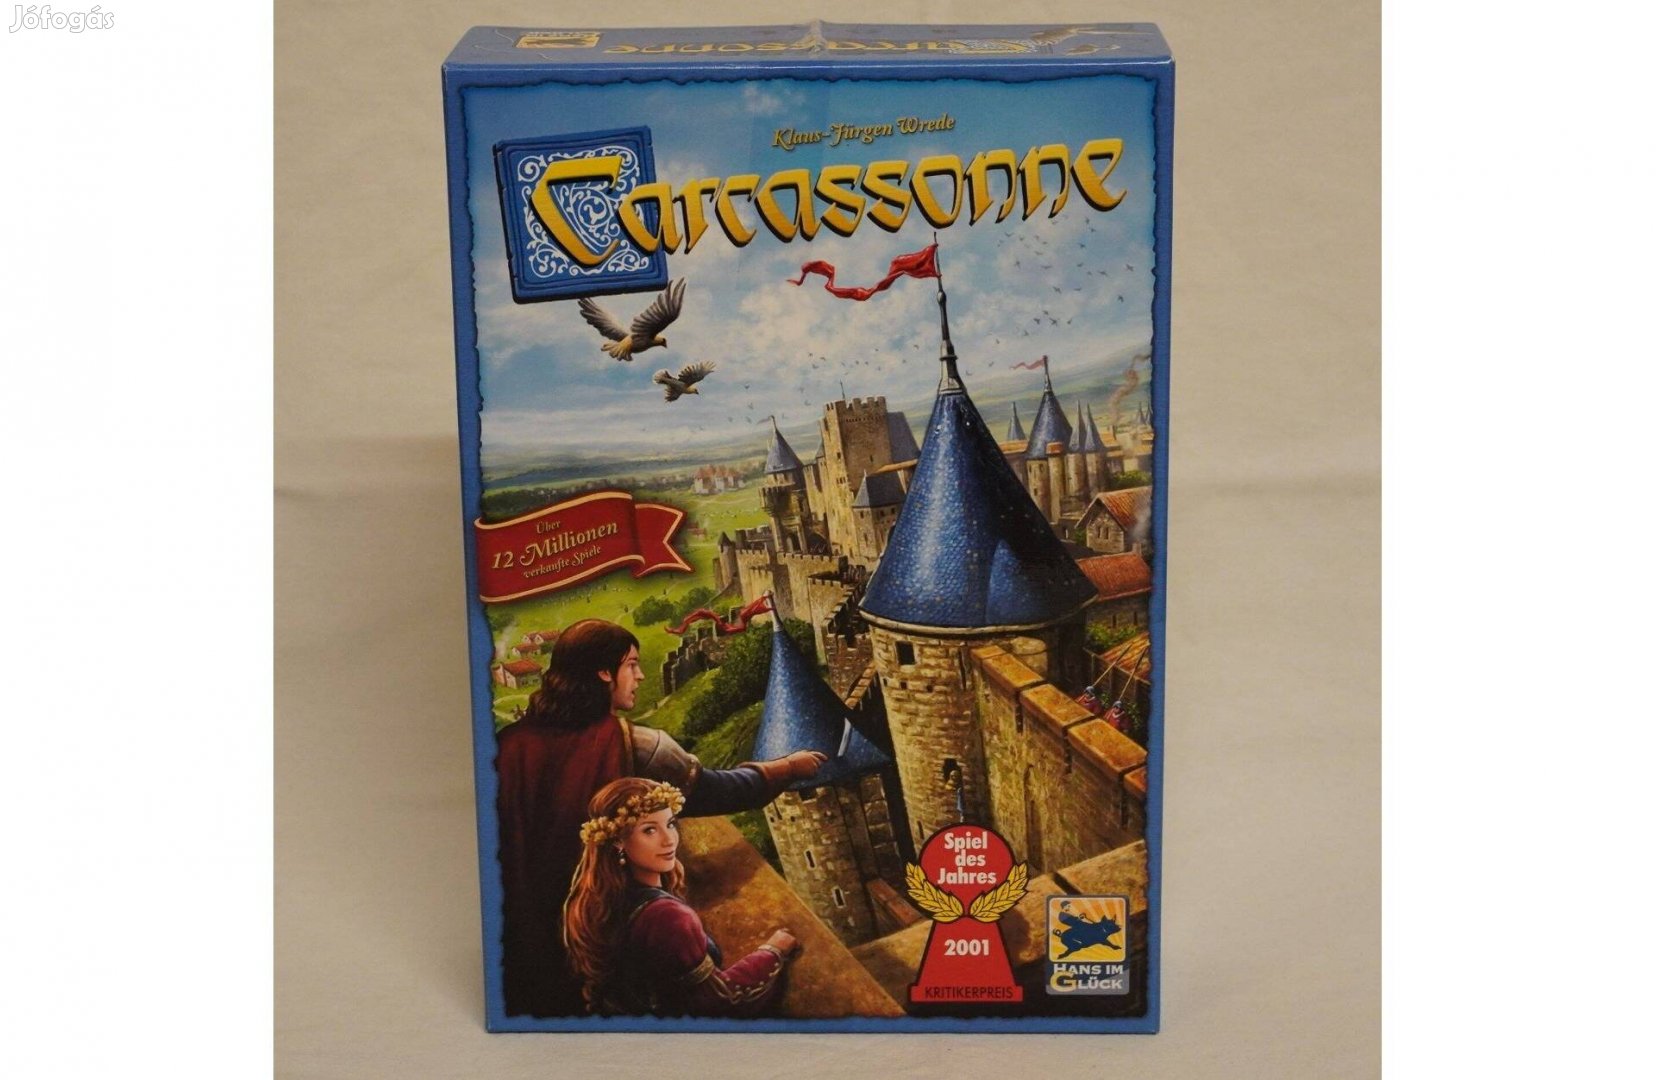 Carcassonne - Hans im Glück Carcassone alapjáték 2001 év játéka társas